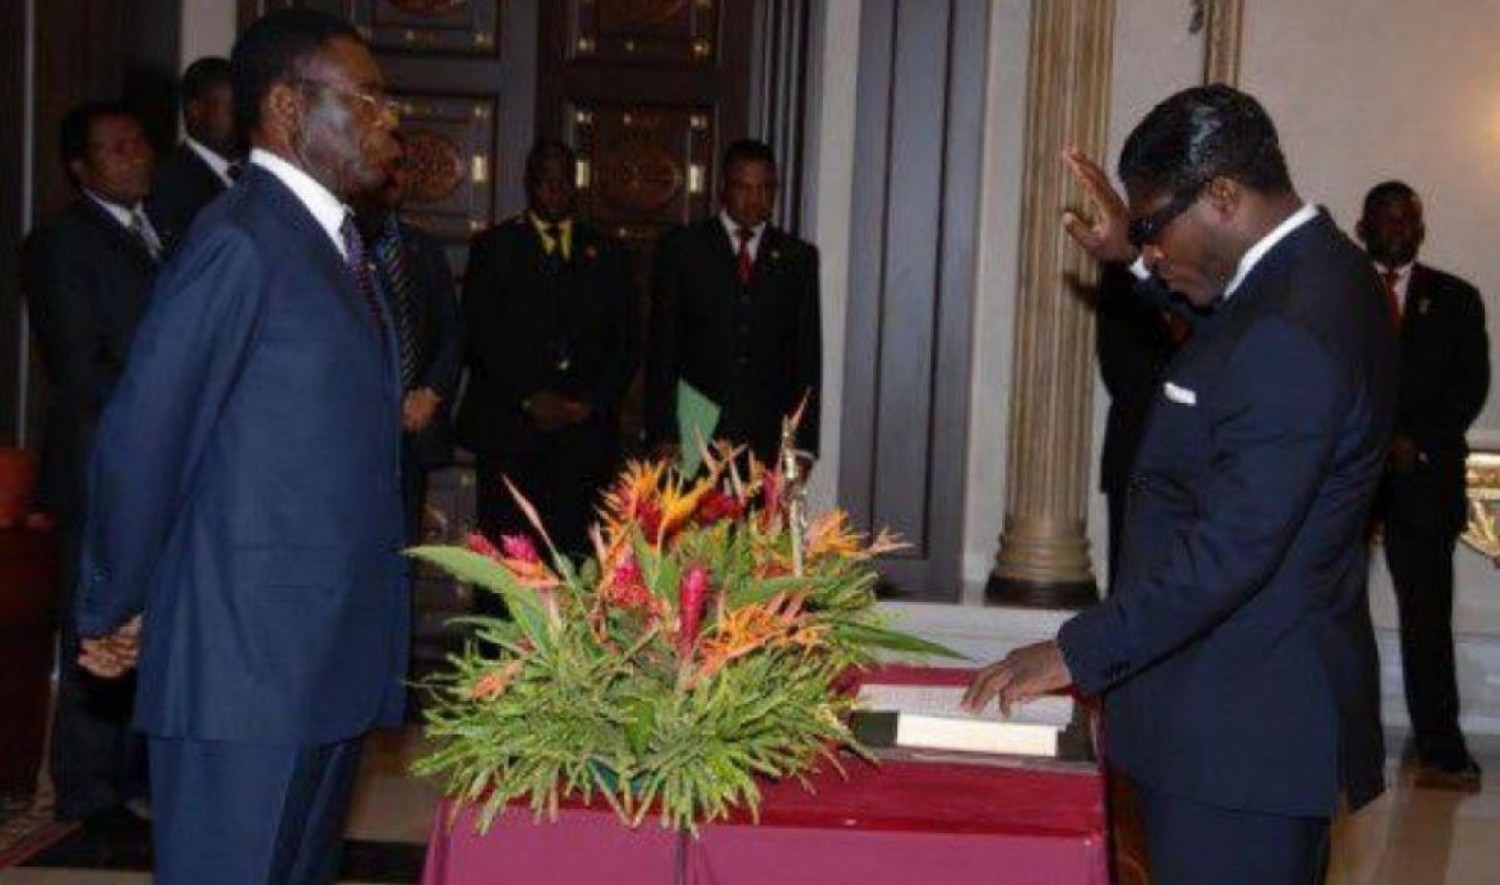 Guinée - Equatoriale : Le parlement approuve des élections anticipées, suspens autour d'une candidature de fils Obiang